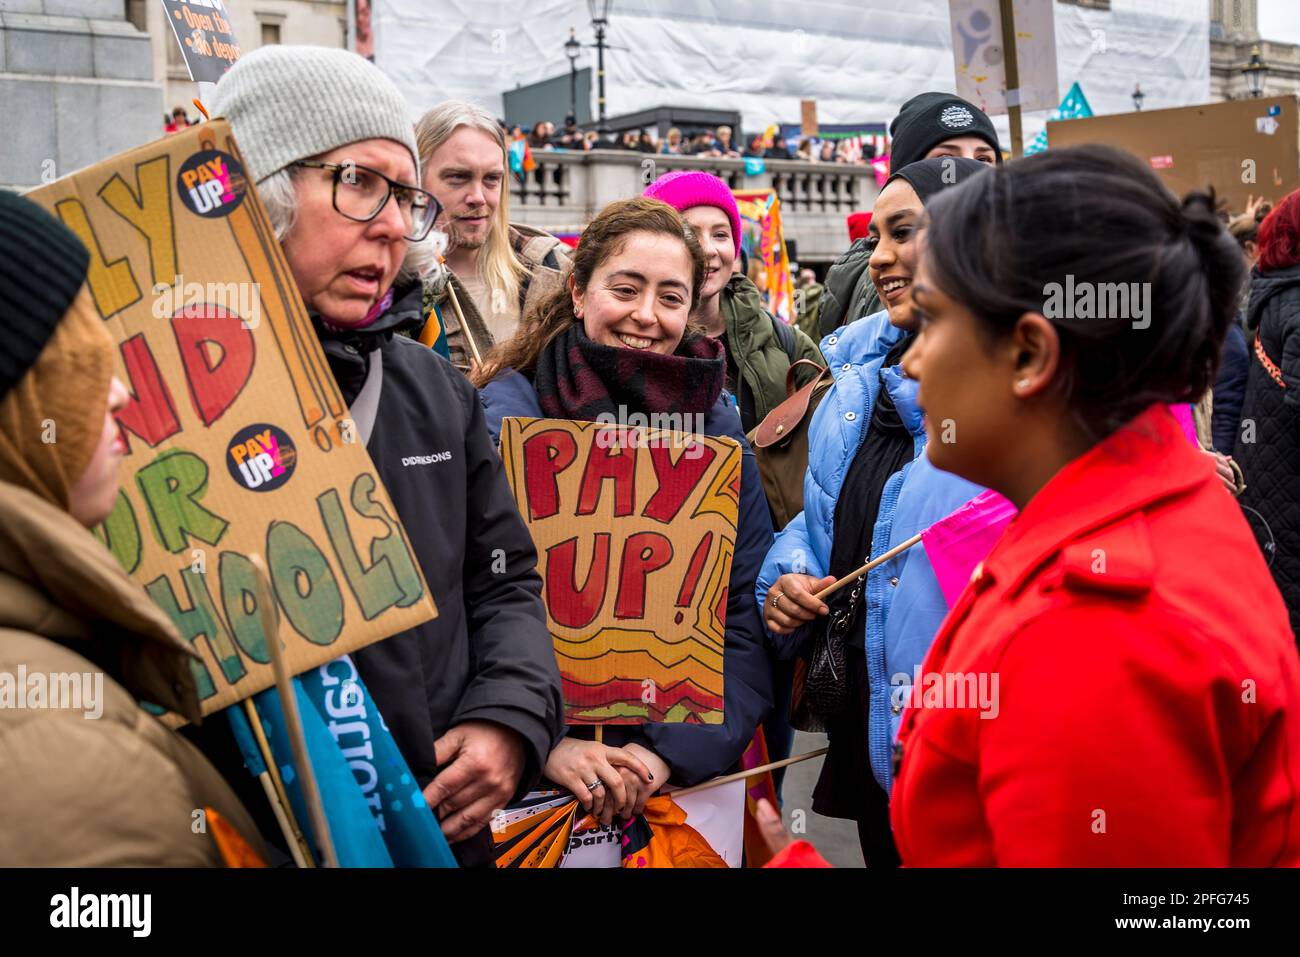 Los maestros se declaran en huelga y se manifiestan por un salario justo en Trafalgar Square, Londres, Reino Unido, 15/03/2023 Foto de stock